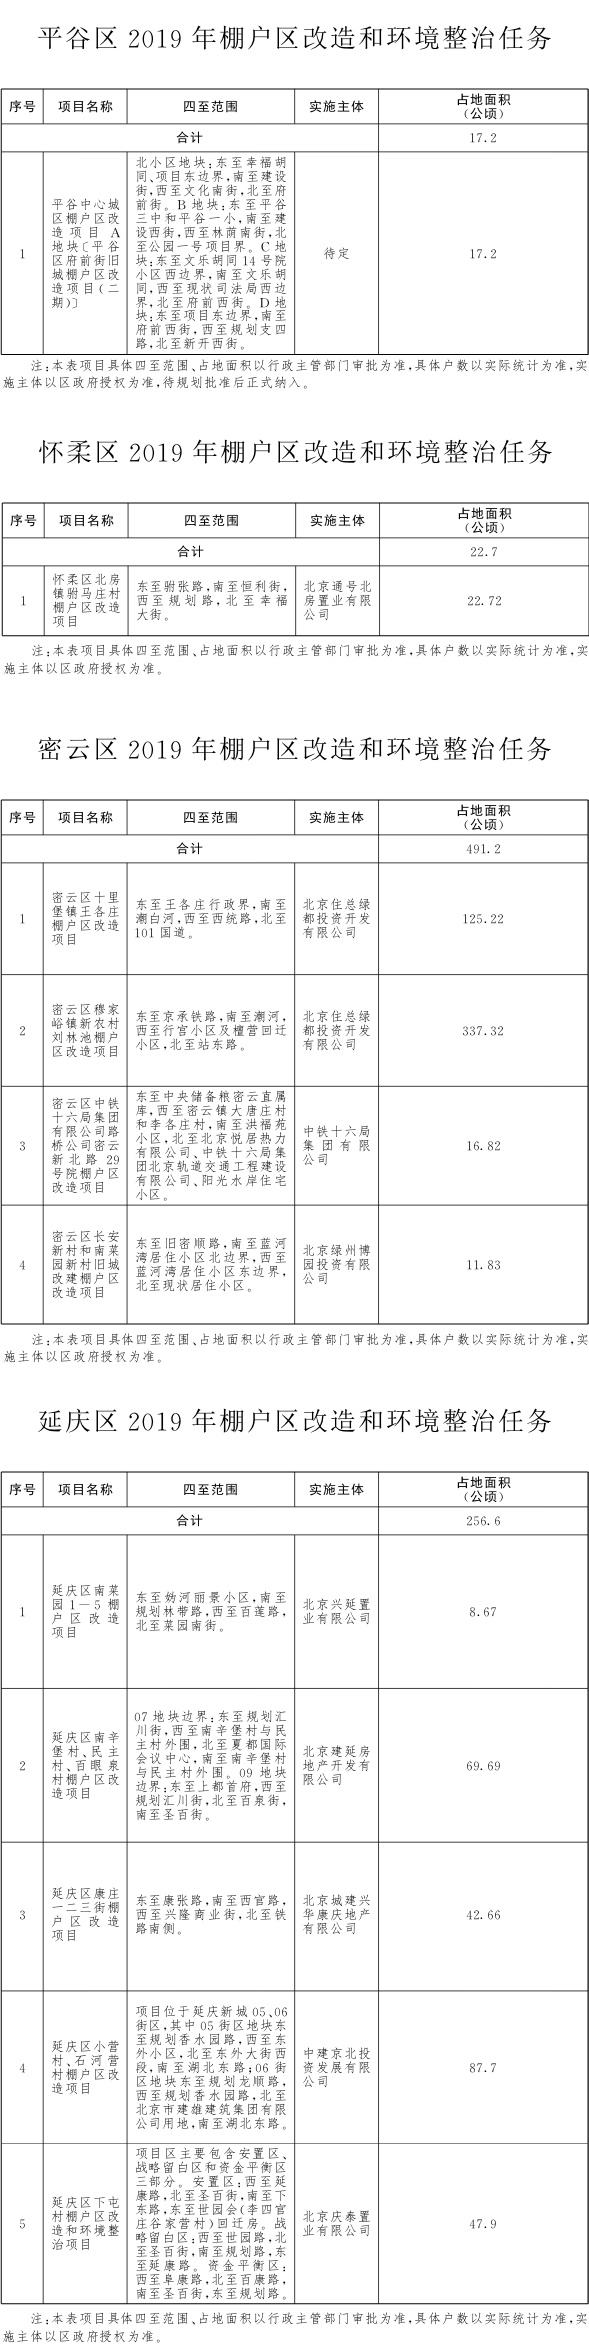 北京市2019年棚户区改造和环境整治任务-4.jpg